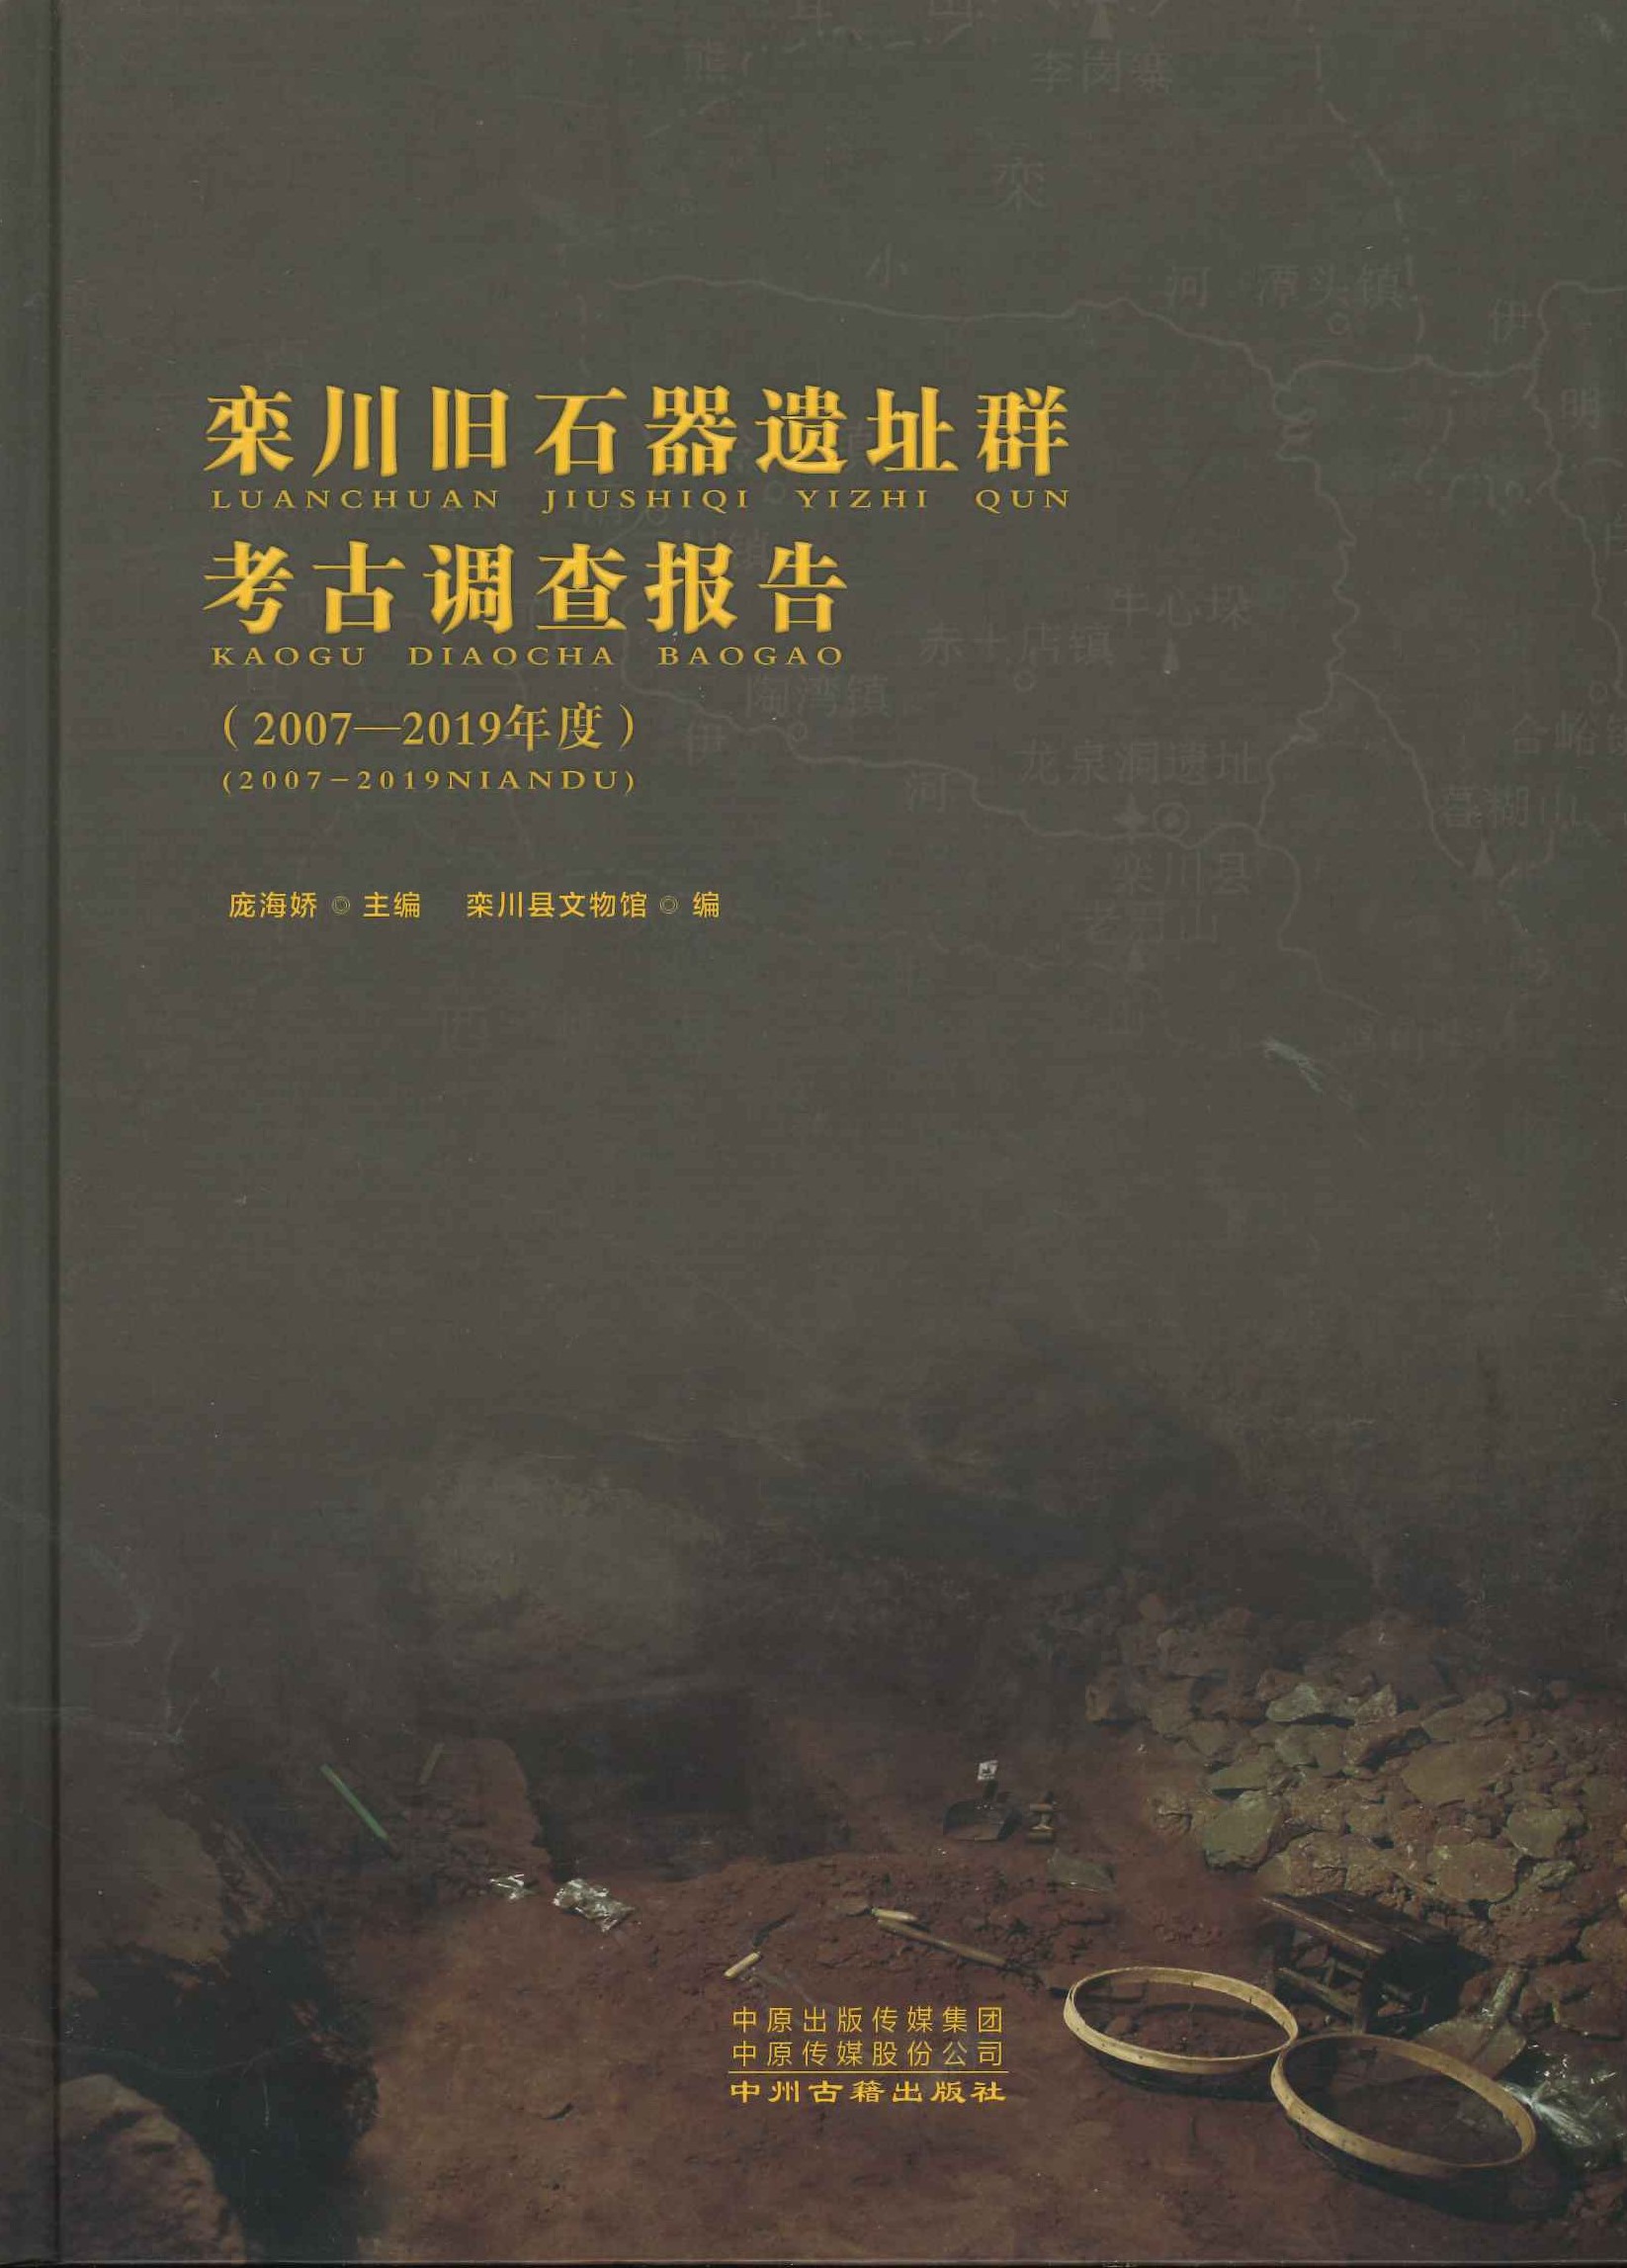 栾川旧石器遗址群考古报告(2007-2019年度)